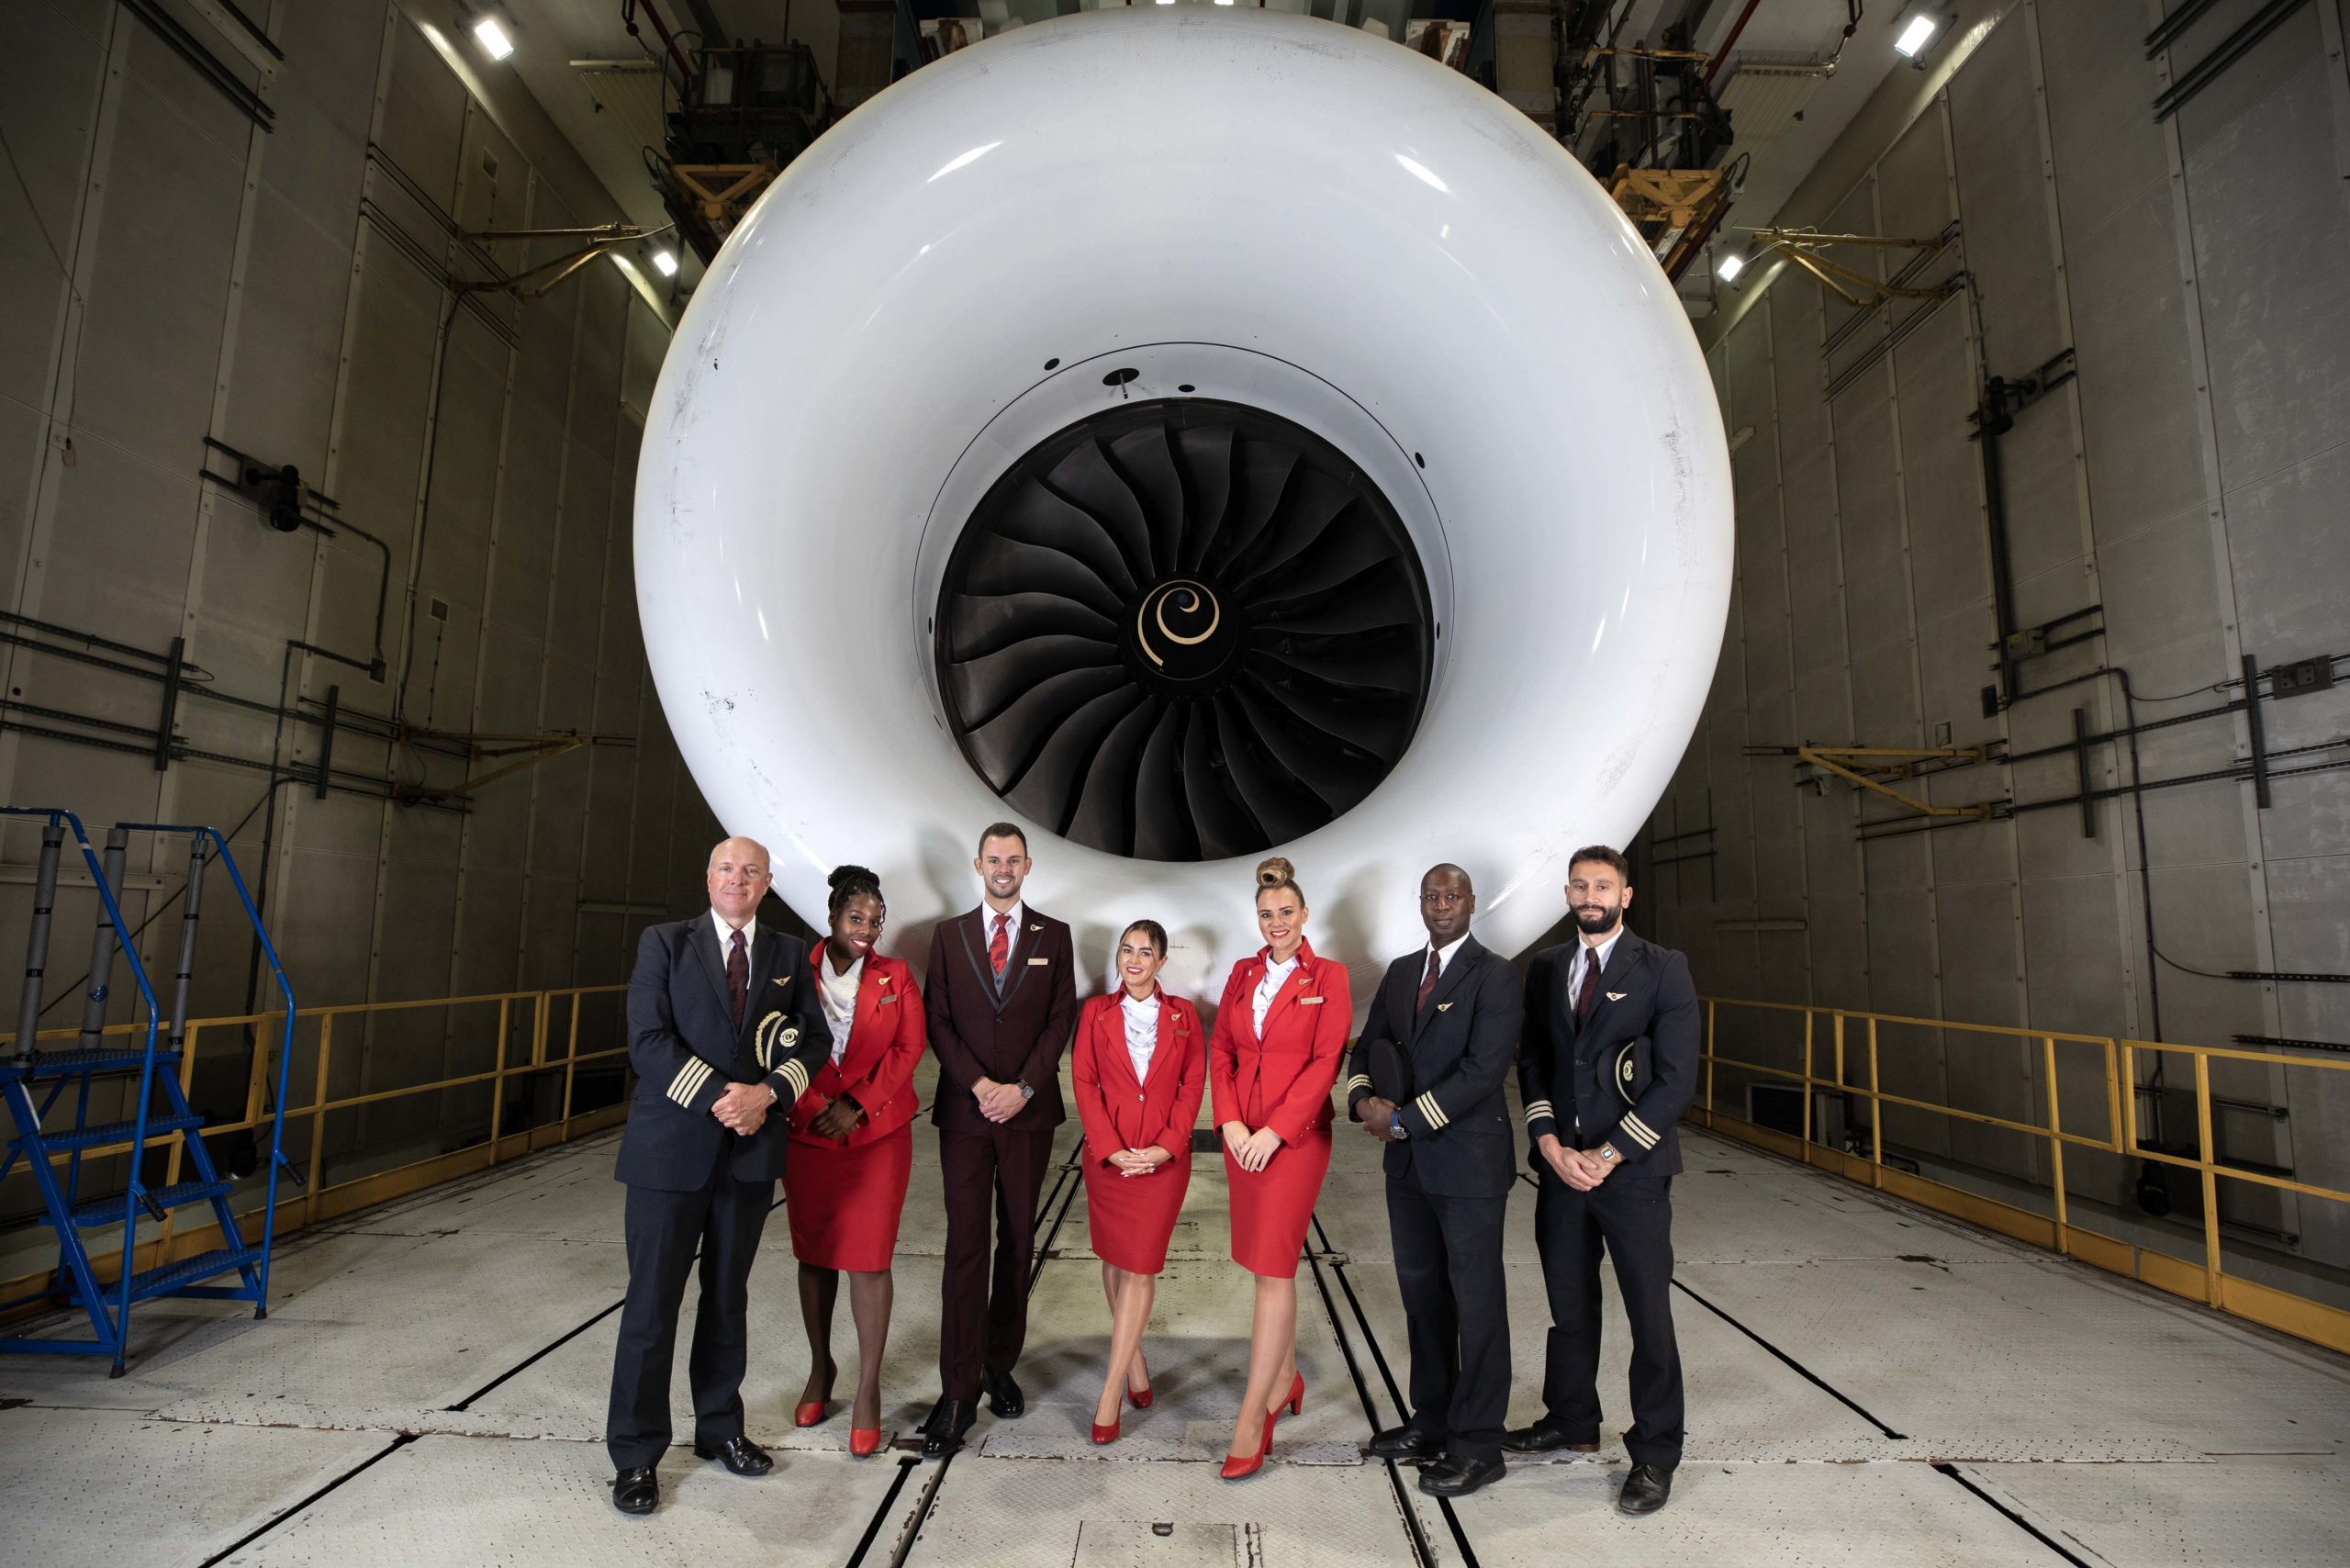 Tripulação em frente a turbina da aeronave Boeing 787, com motor Rolls-Royce Trent 1000, que fará o voo com 100% de SAF de Londres a Nova Iorque (Foto: Virgin Atlantic)